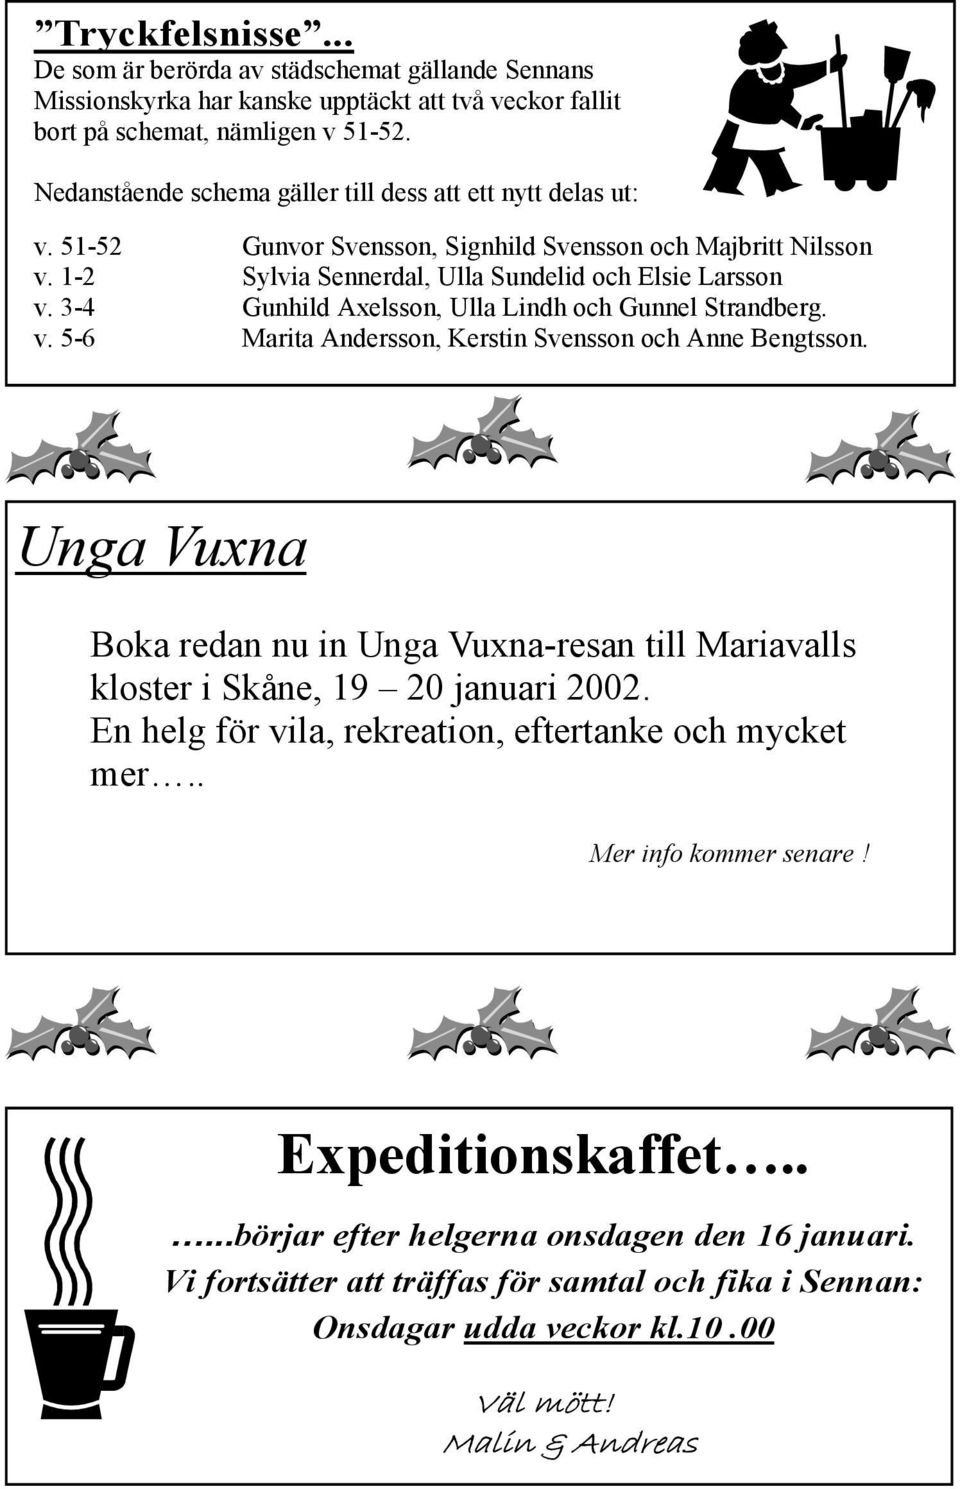 3-4 Gunhild Axelsson, Ulla Lindh och Gunnel Strandberg. v. 5-6 Marita Andersson, Kerstin Svensson och Anne Bengtsson.